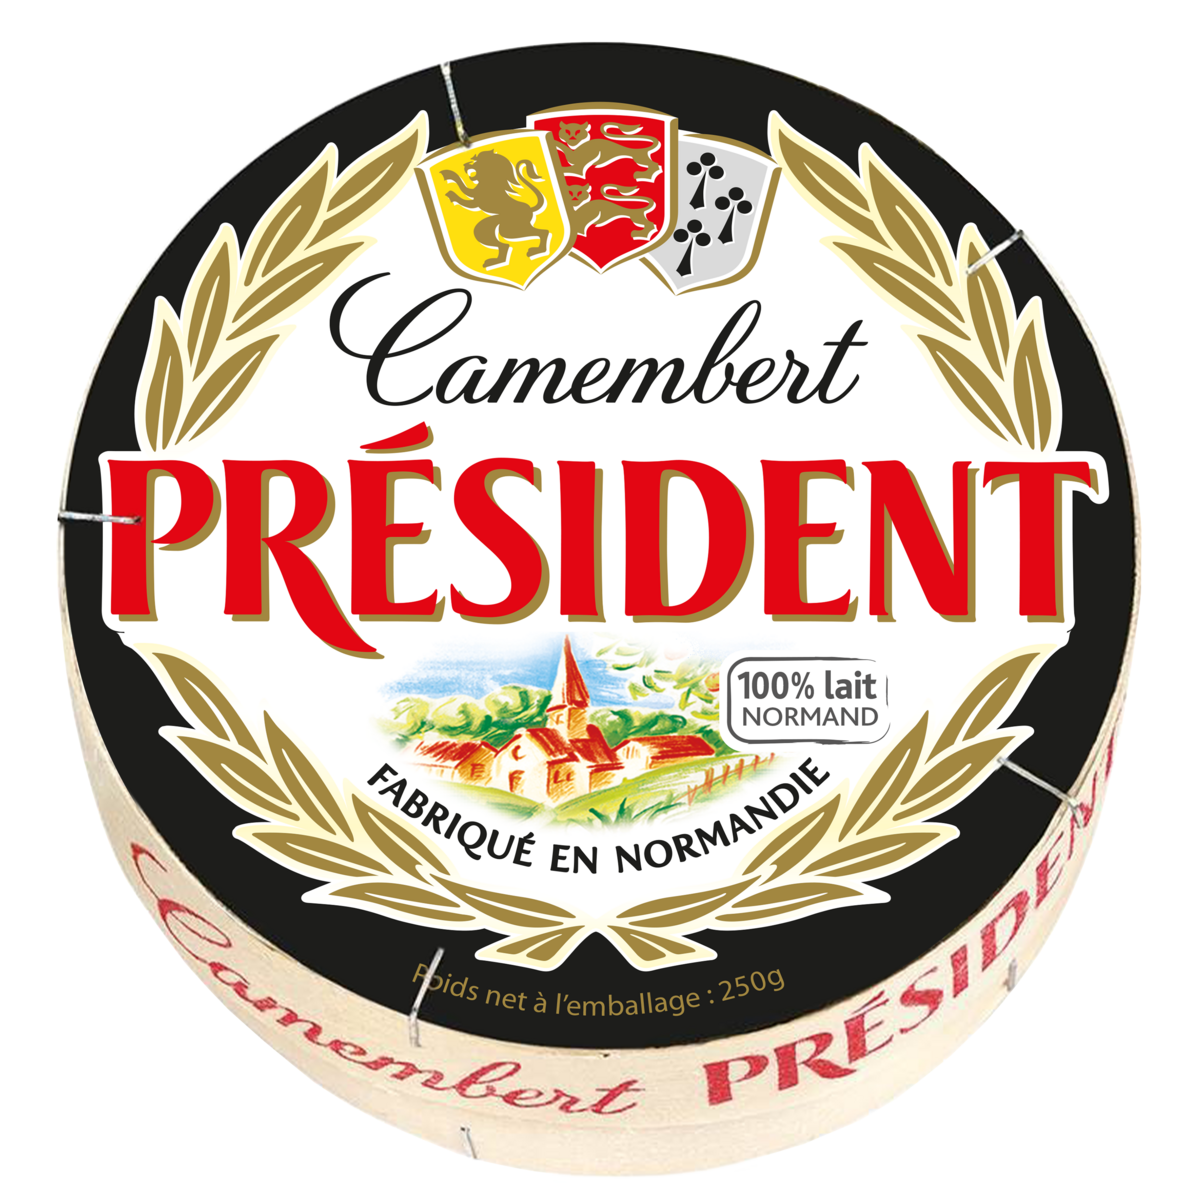 CAMEMBERT PRESIDENT